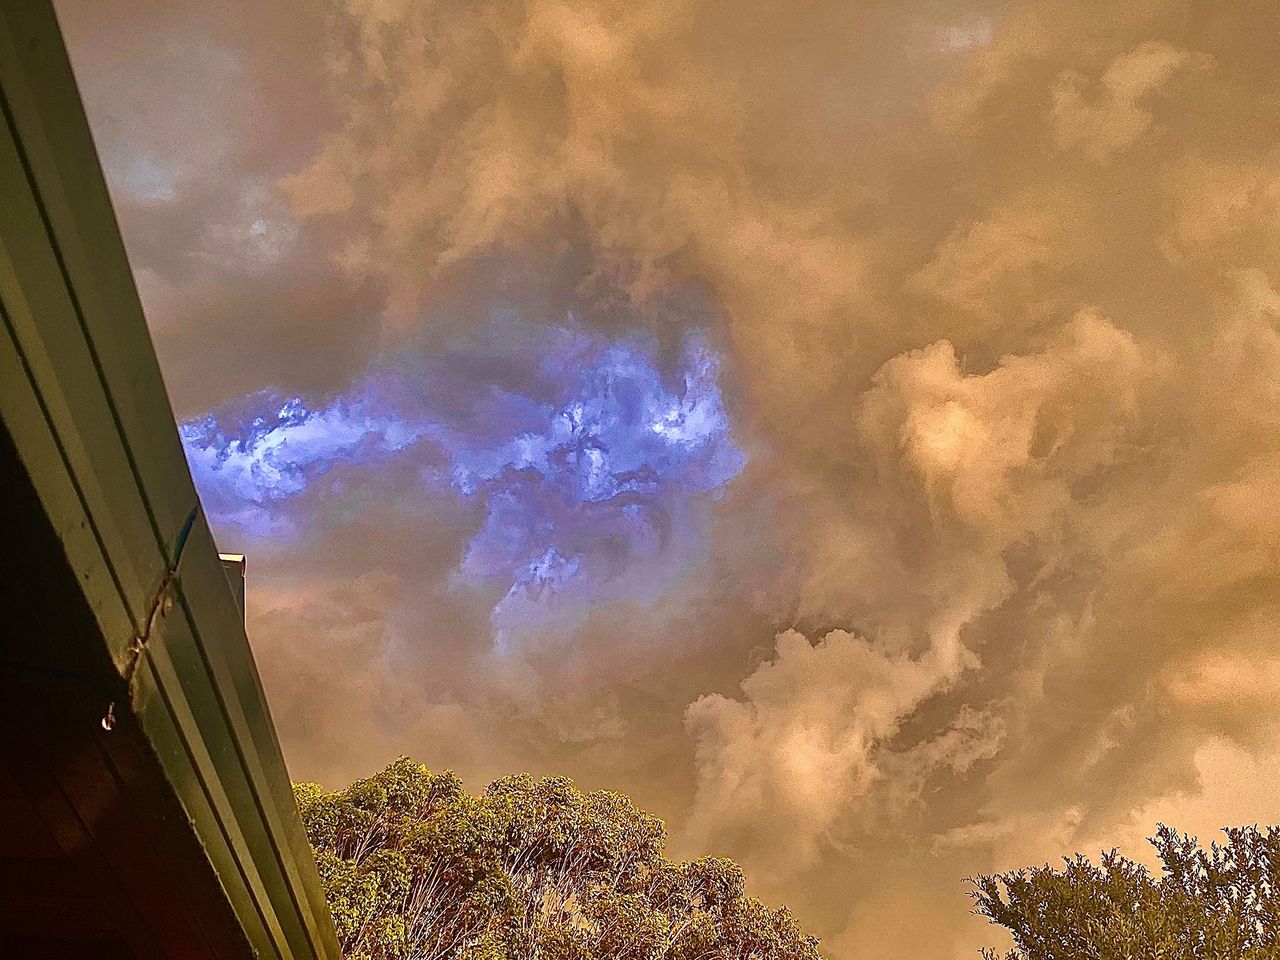 Zdjęcie dnia: Dziwne chmury wyglądały jak przejście między światami